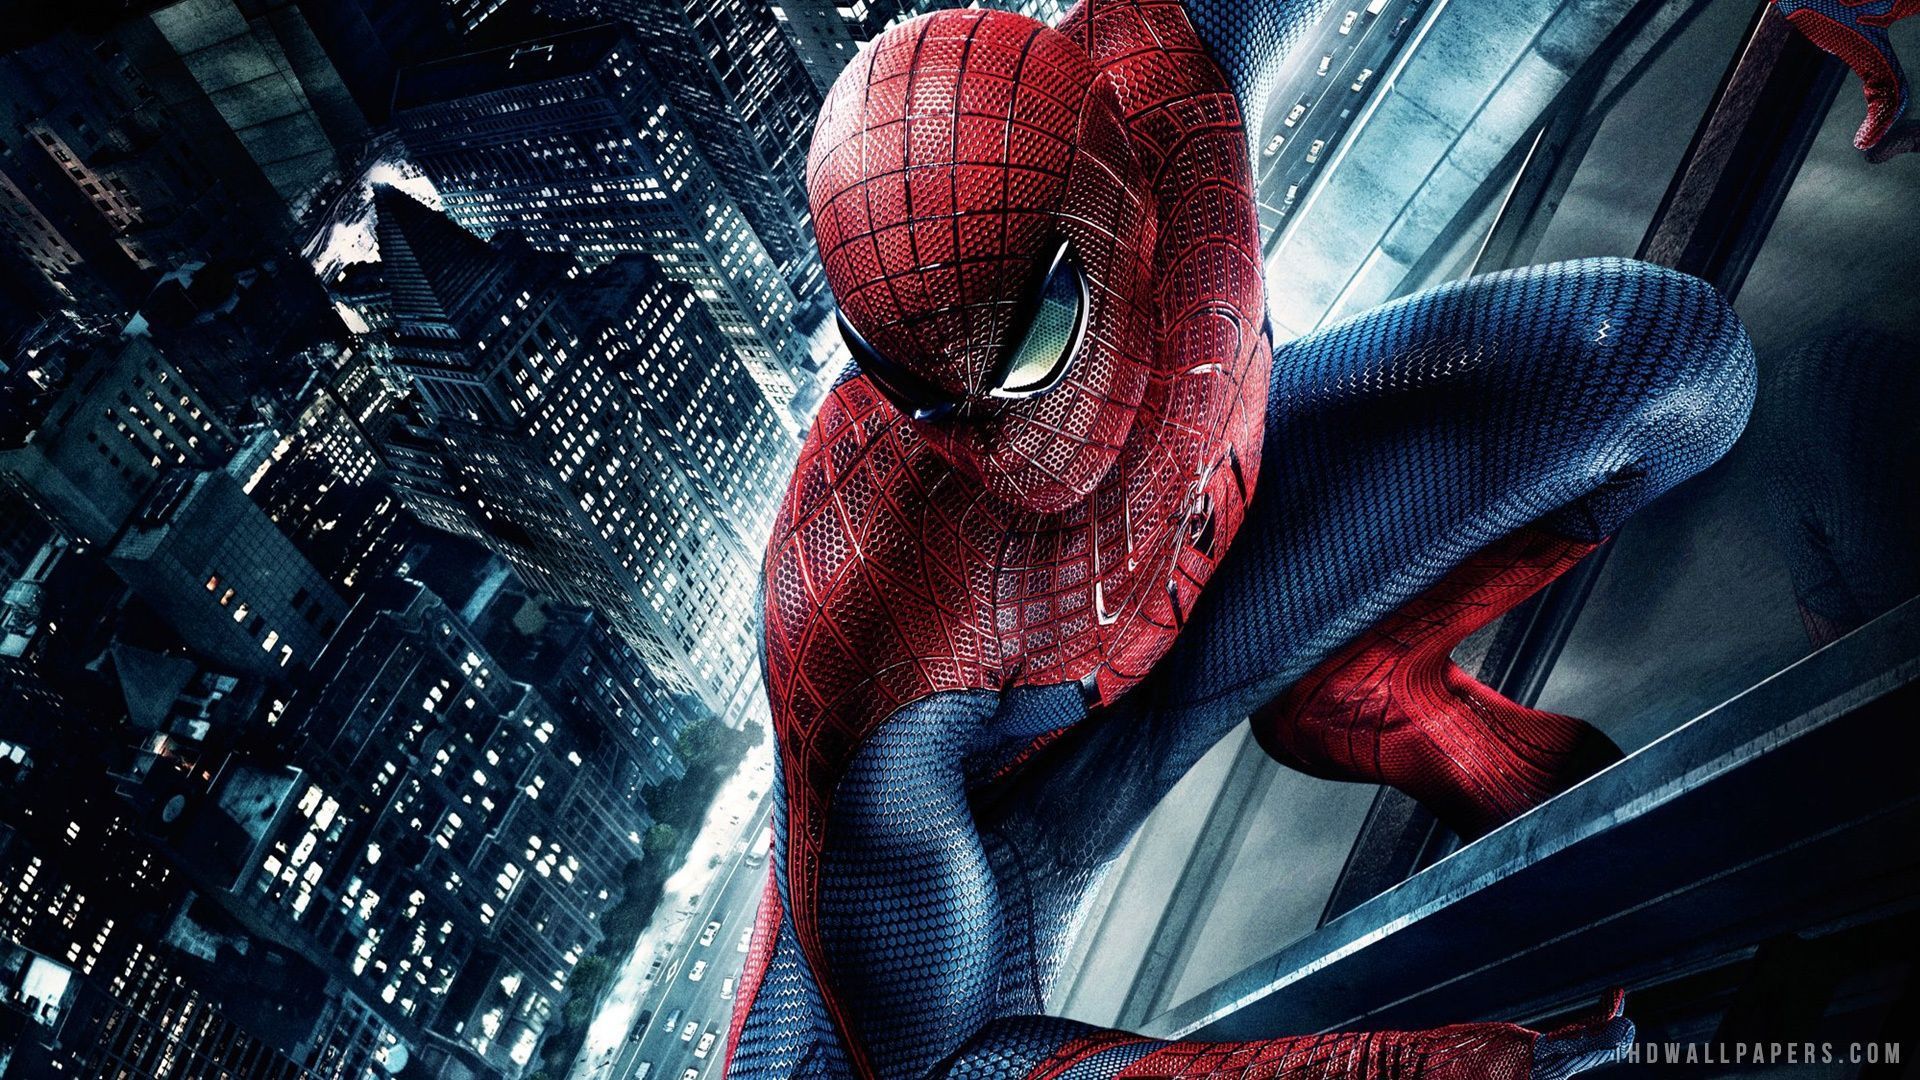 Amazing Spider Man Movie HD Wide Wallpaper - 1920x1080 Resolution